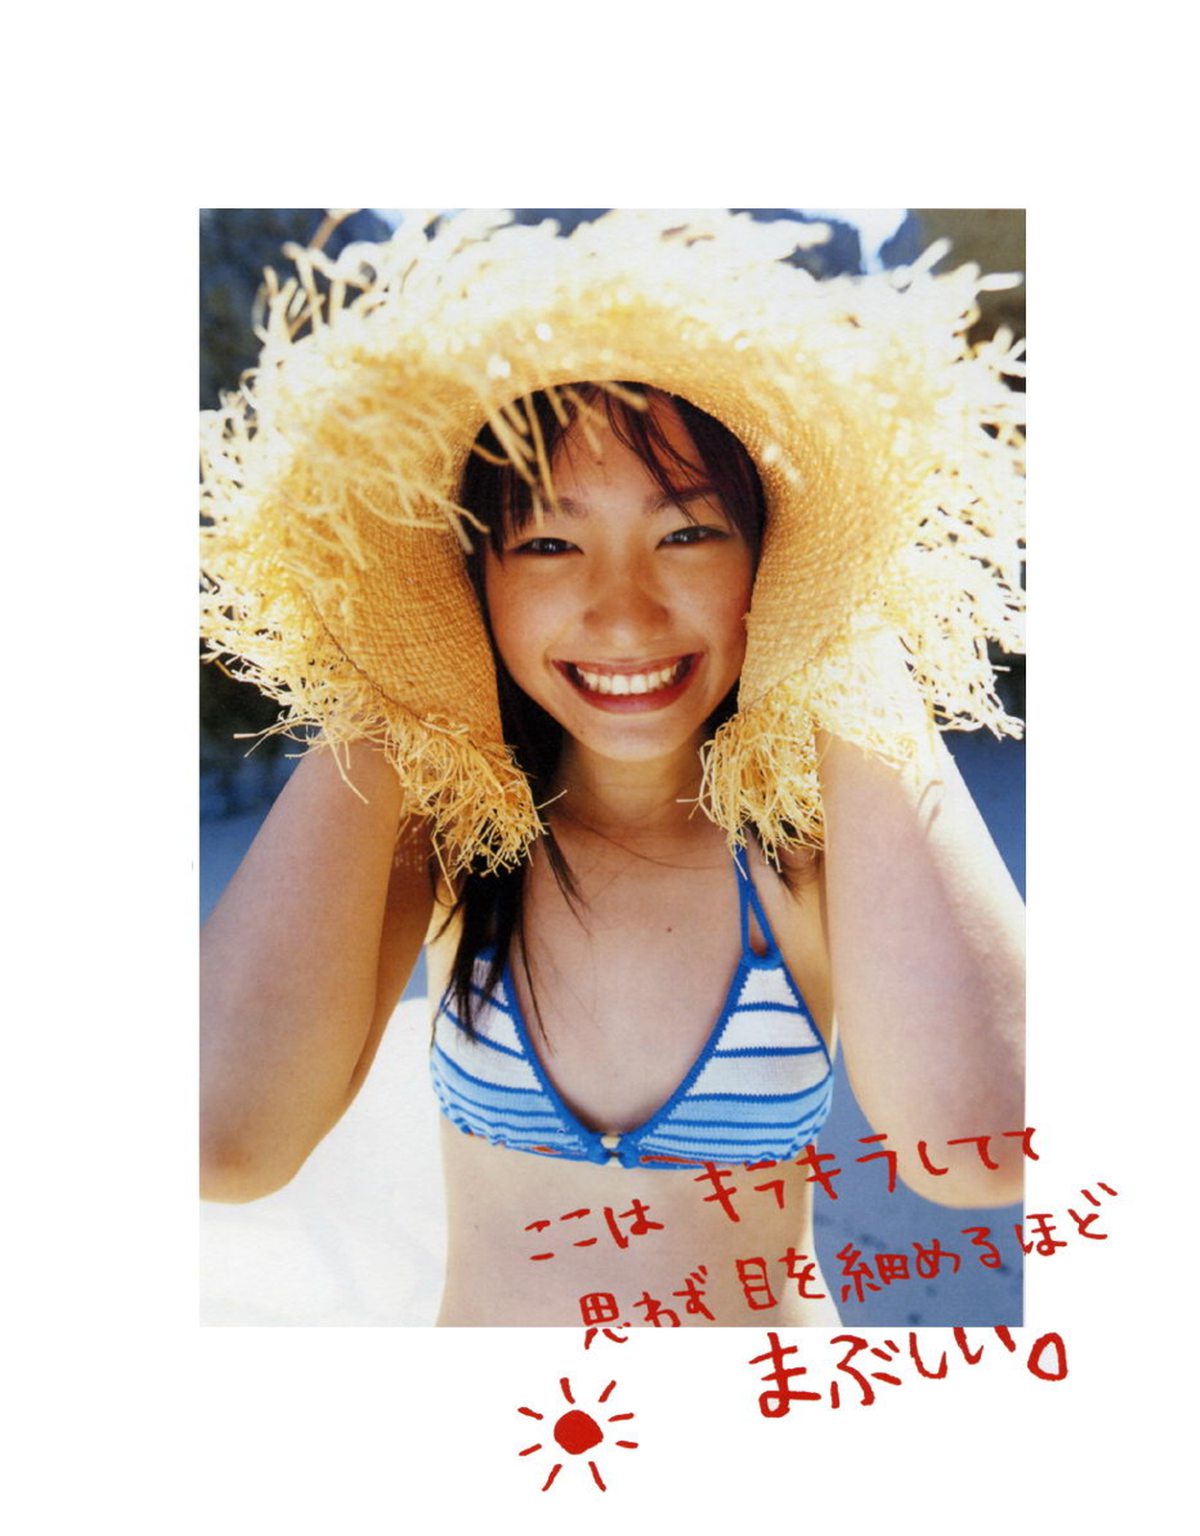 Photobook Yui Aragaki 新垣結衣 Chura Chura ちゅら ちゅら 2006 03 03 0006 9985259646.jpg